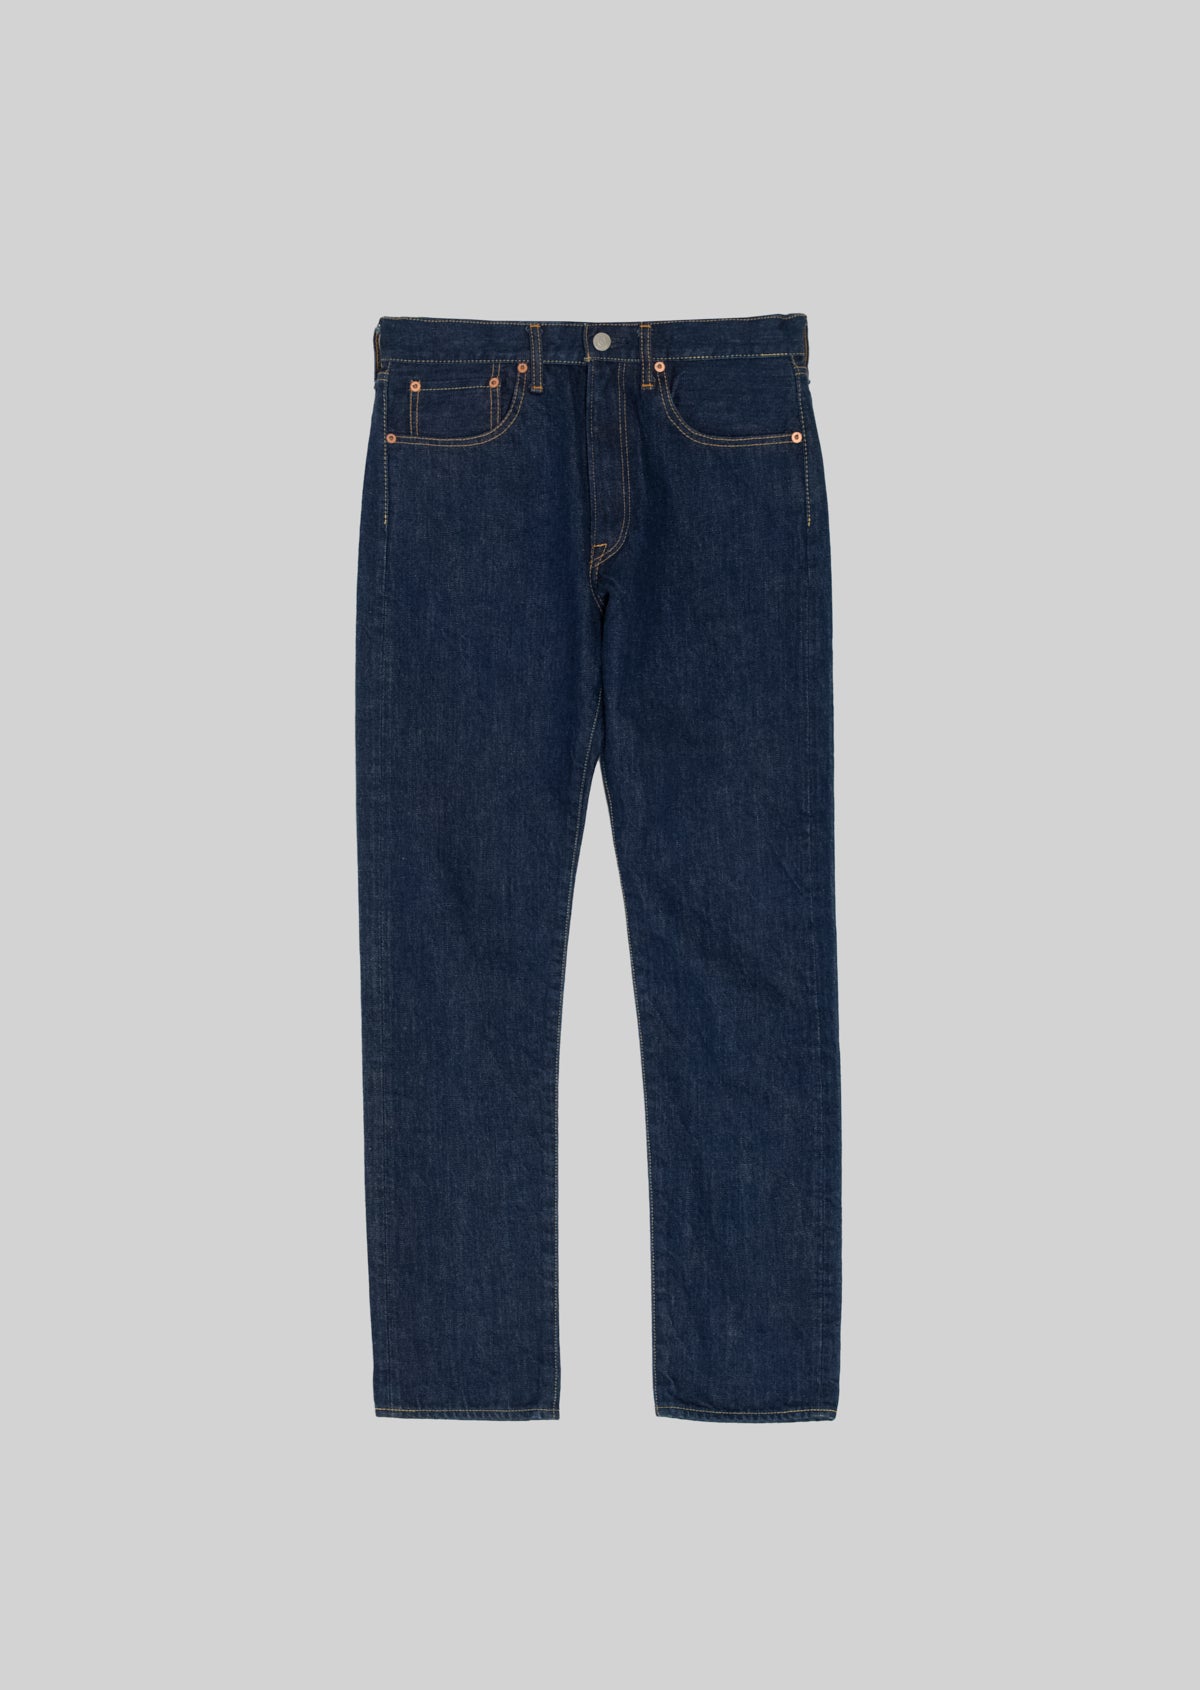 Buy five-pocket jeans online